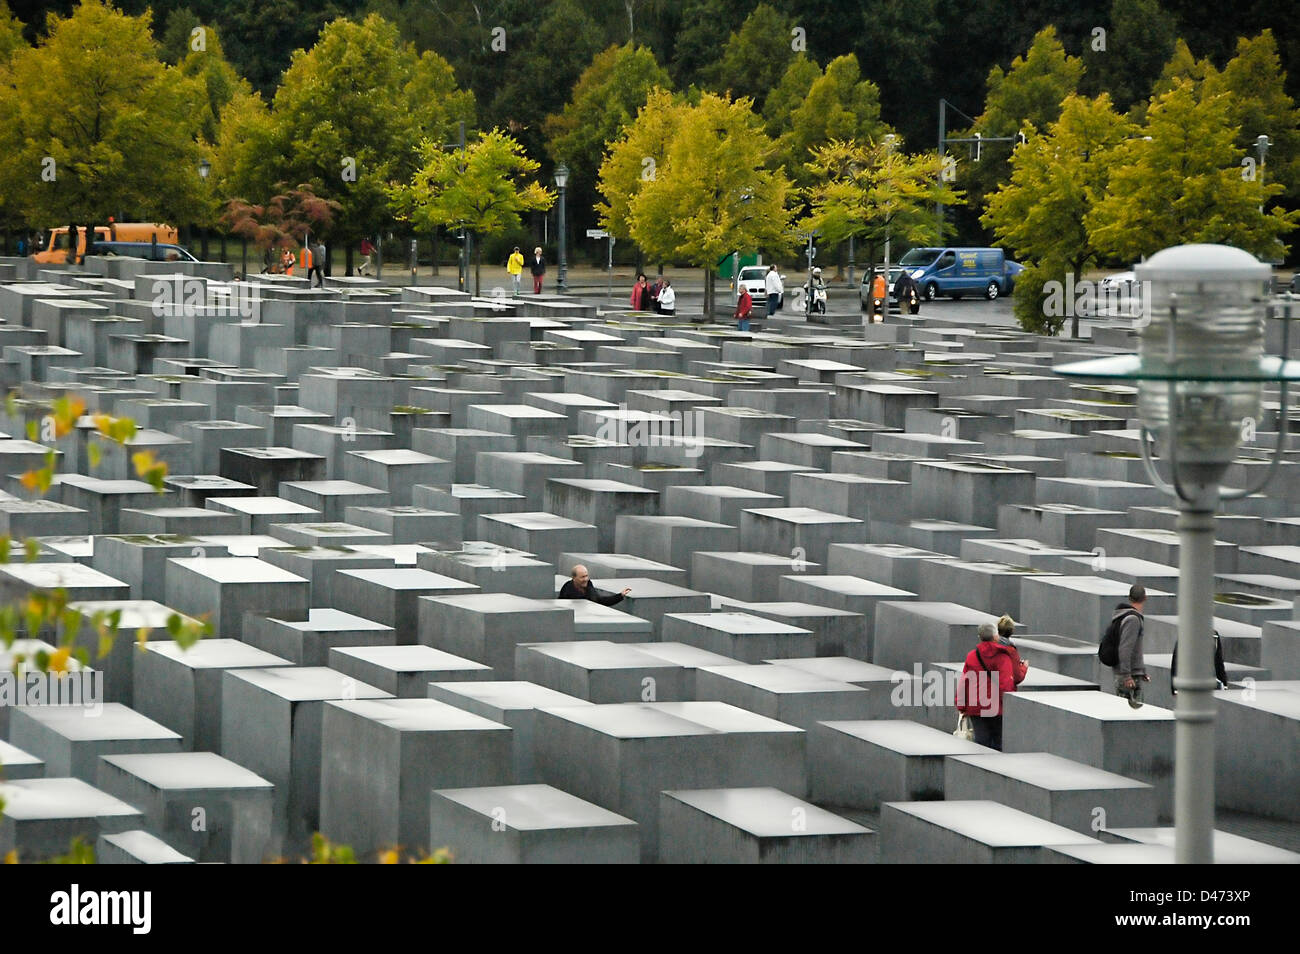 Berlin Holocaust Memorial de plaques de pierre aux Juifs assassinés durant la 2e guerre mondiale en Europe Banque D'Images